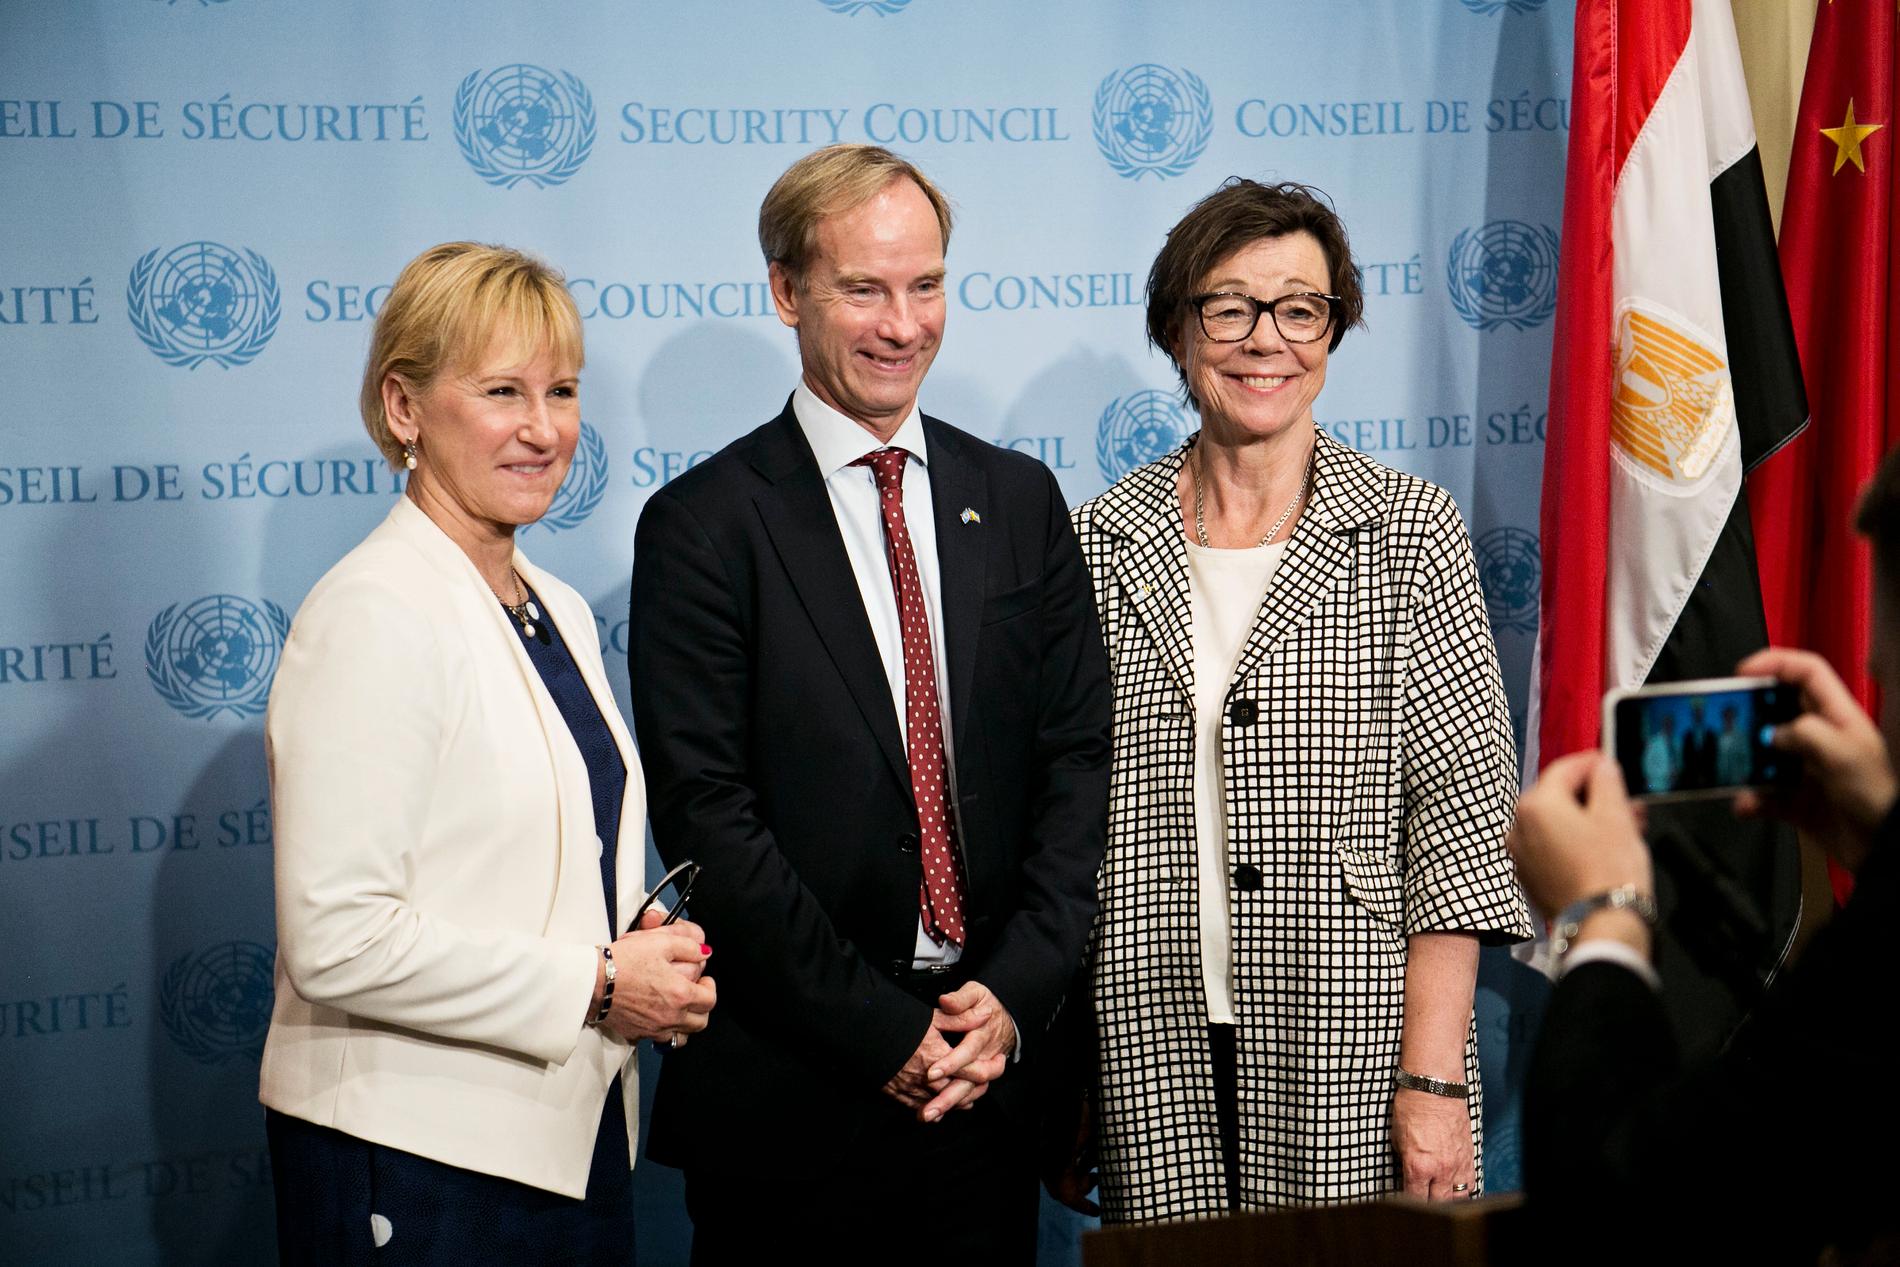 Utrikesminister Margot Wallström,  FN-ambassadör Olof Skoog, och kabinettsekreterare Annika Söder poserar för en bild efter vinsten.